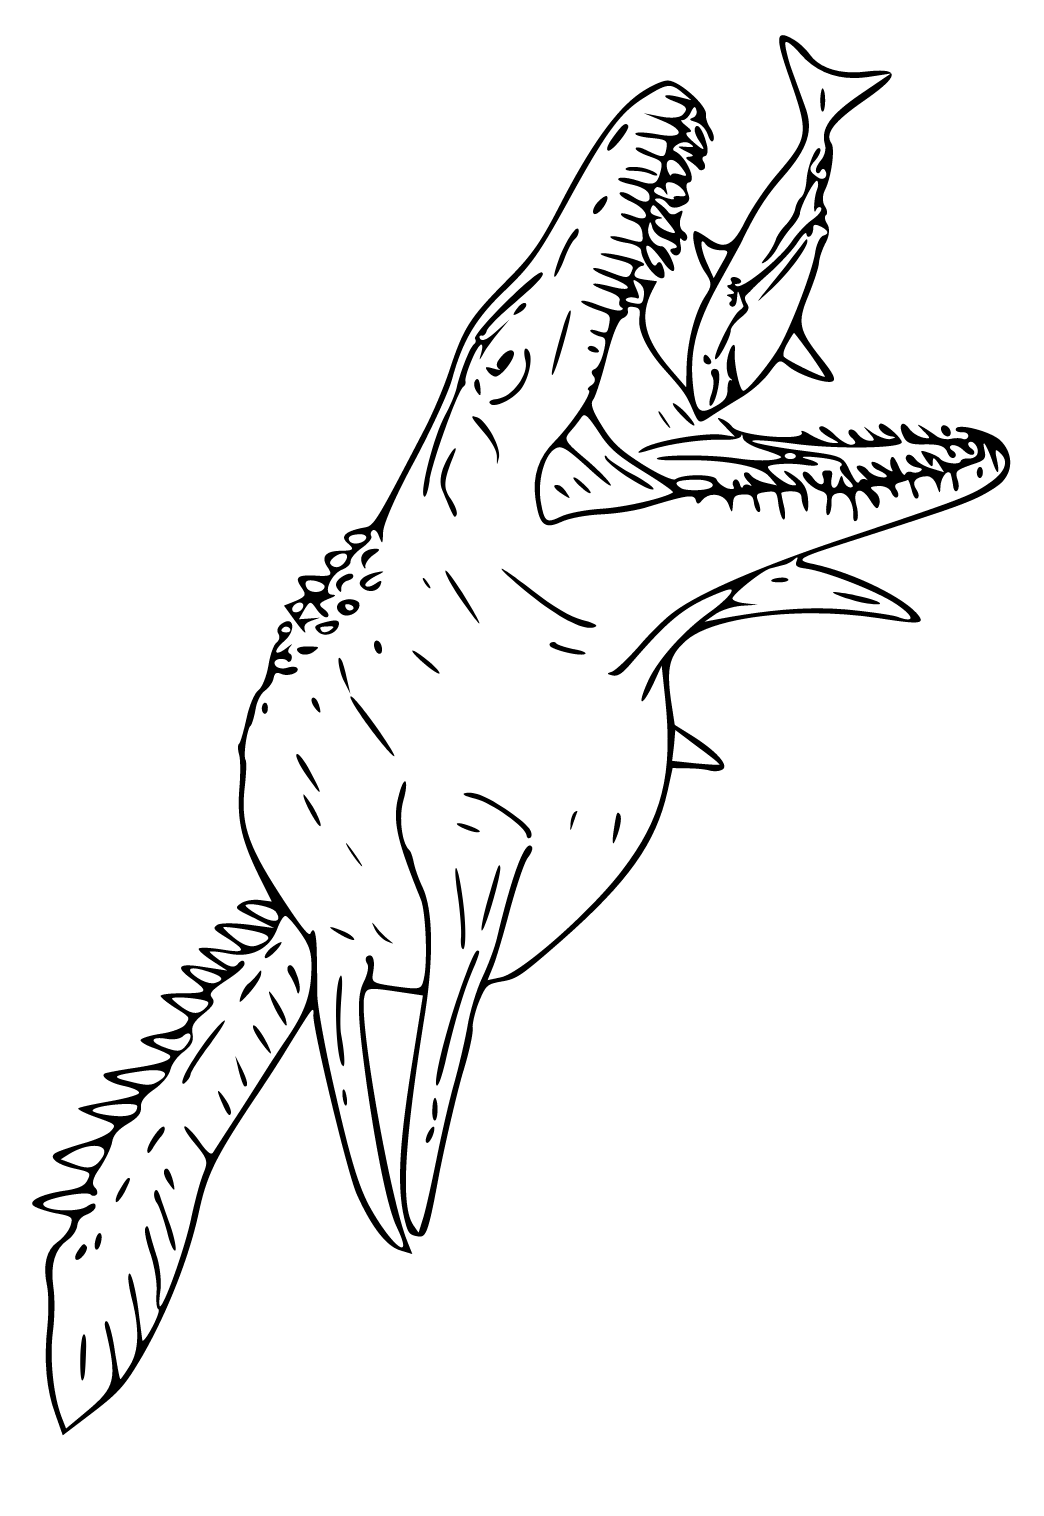 モササウルス